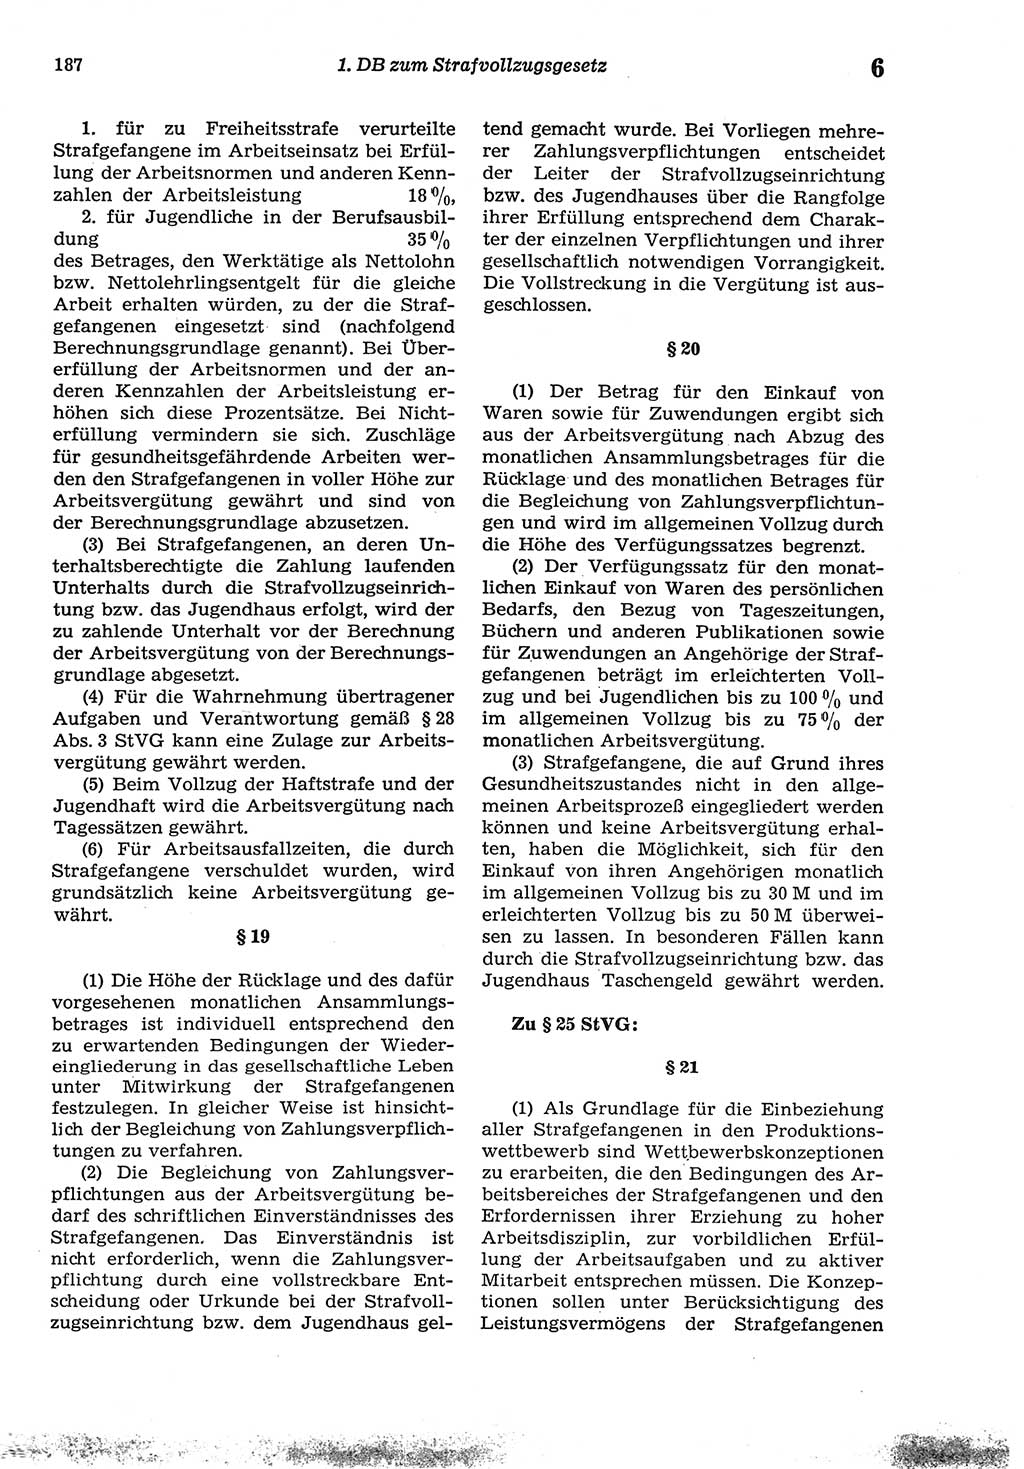 Strafprozeßordnung (StPO) der Deutschen Demokratischen Republik (DDR) sowie angrenzende Gesetze und Bestimmungen 1977, Seite 187 (StPO DDR Ges. Best. 1977, S. 187)